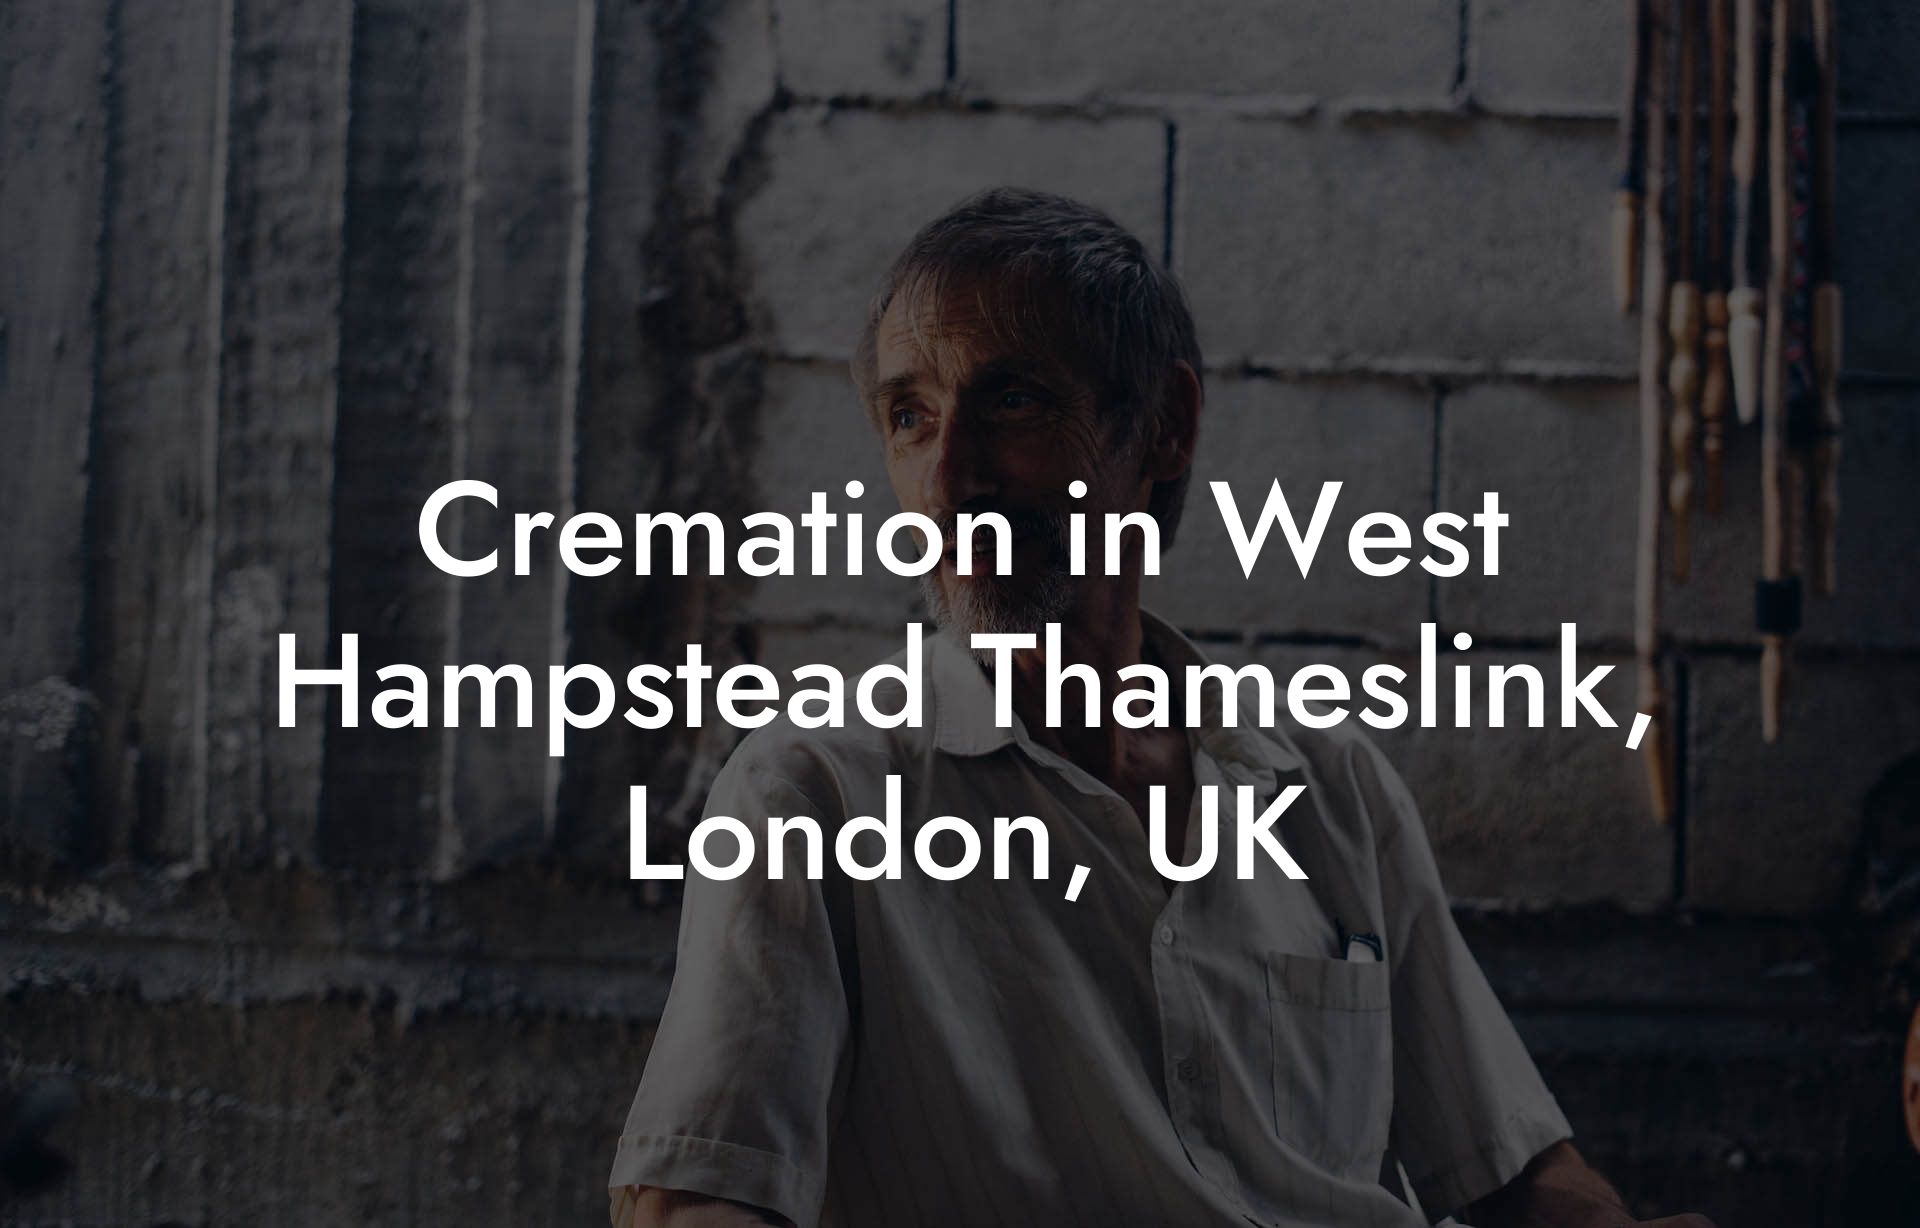 Cremation in West Hampstead Thameslink, London, UK